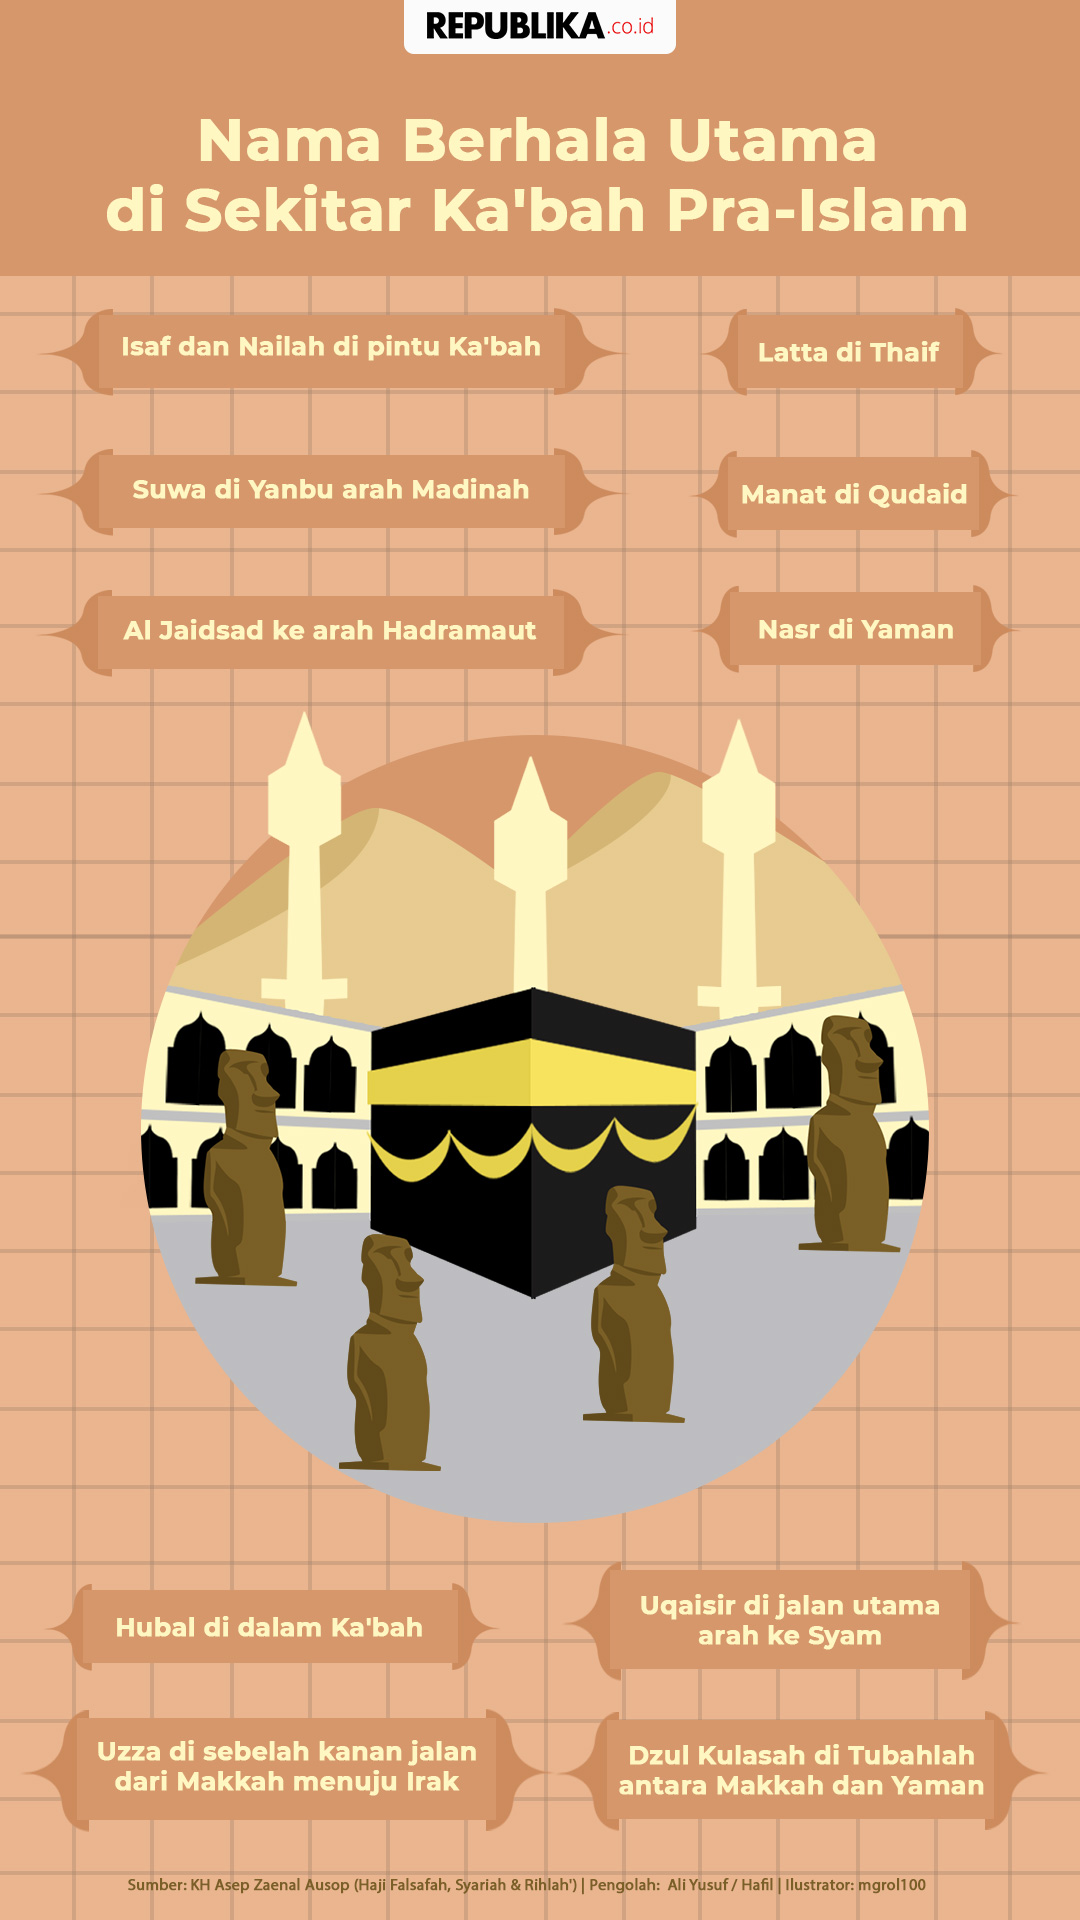 Berhala terbesar di mekkah